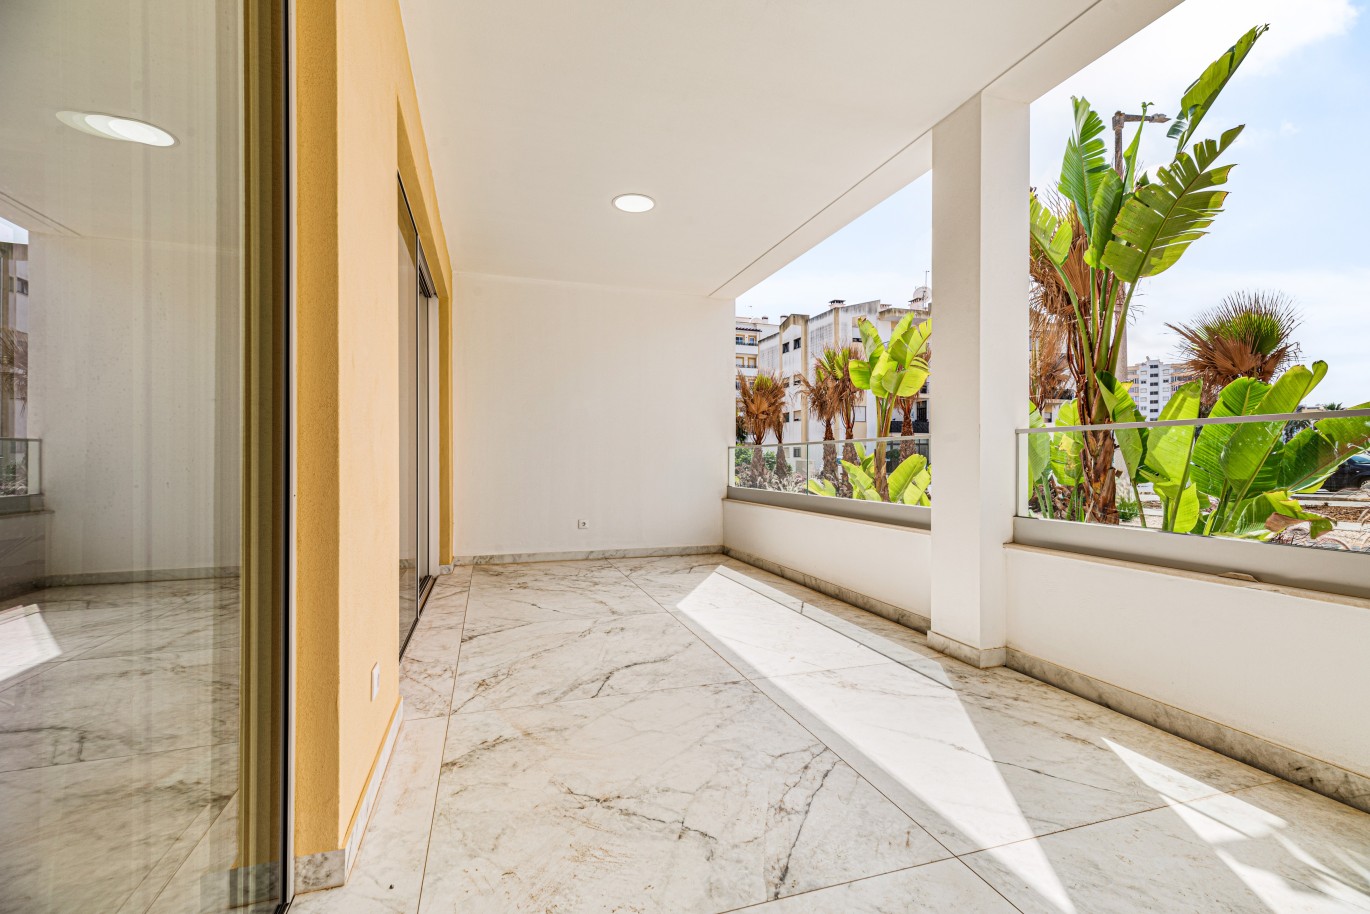 Apartamento, com terraço, para venda, em Lagos, Algarve_238564